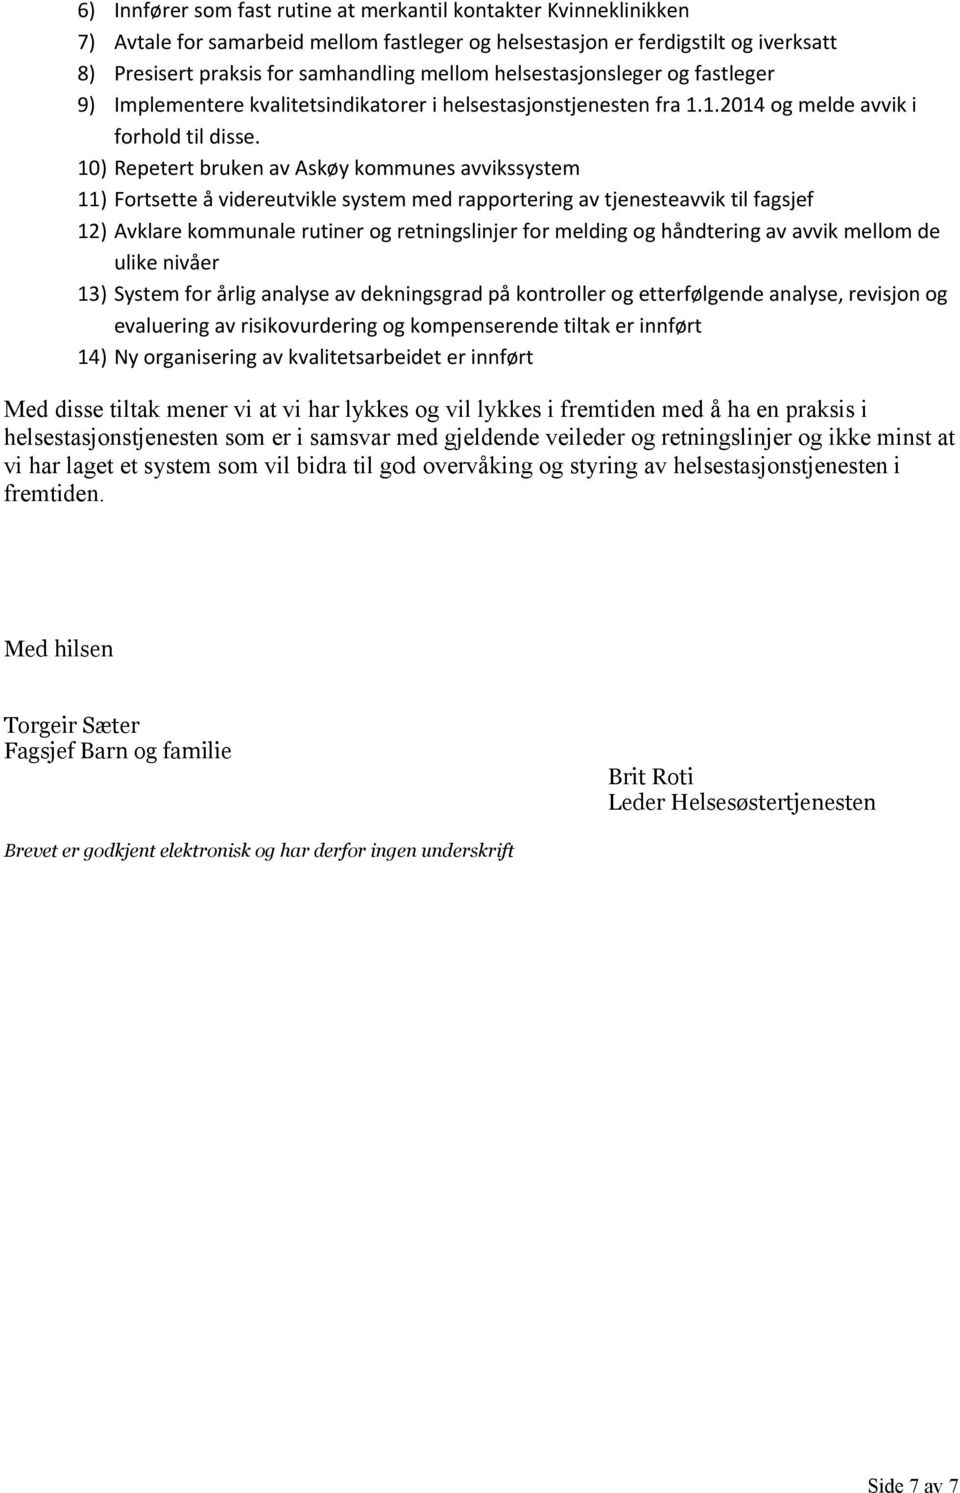 10) Repetert bruken av Askøy kommunes ssystem 11) Fortsette å videreutvikle system med rapportering av tjeneste til fagsjef 12) Avklare kommunale rutiner og retningslinjer for melding og håndtering